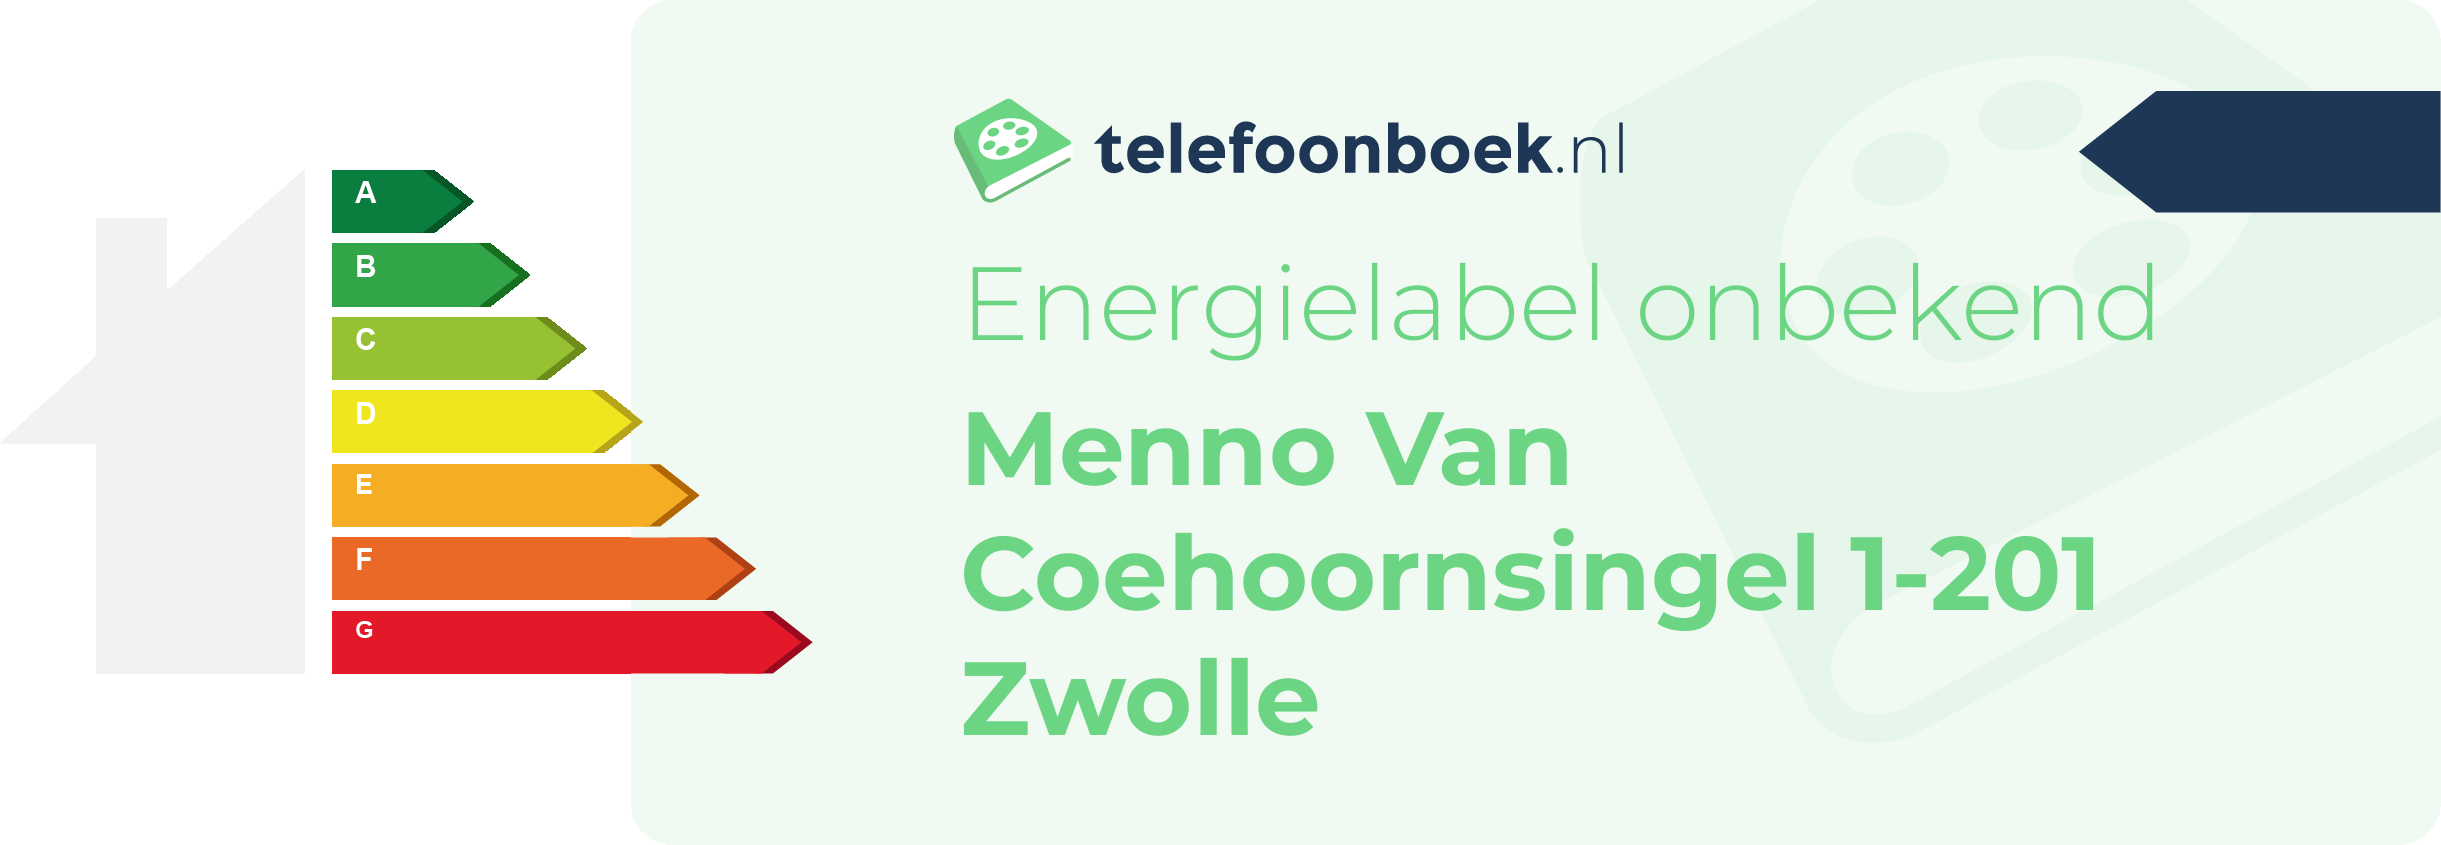 Energielabel Menno Van Coehoornsingel 1-201 Zwolle